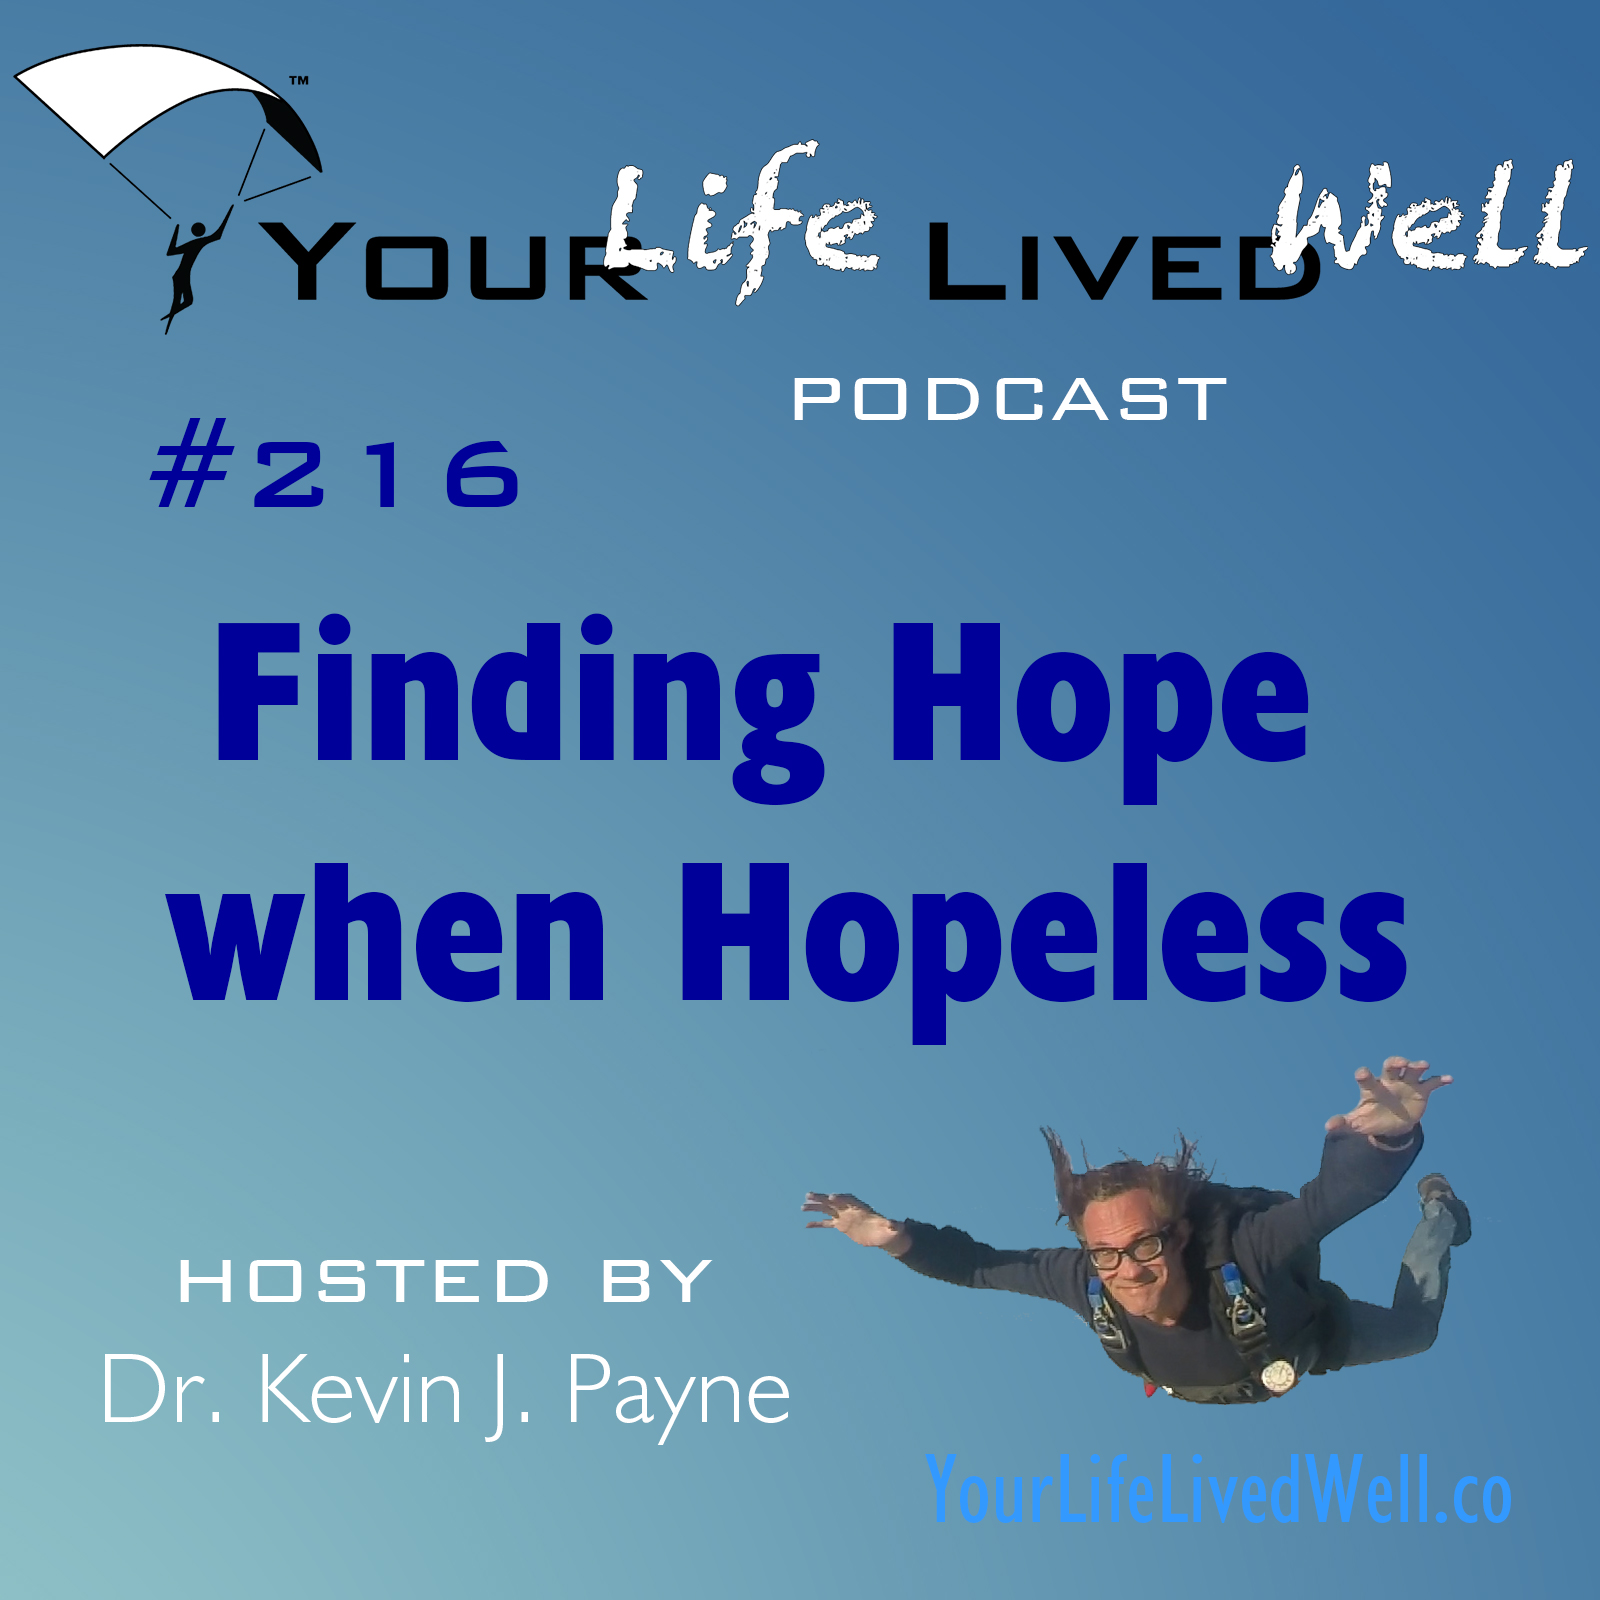 Finding Hope when Hopeless